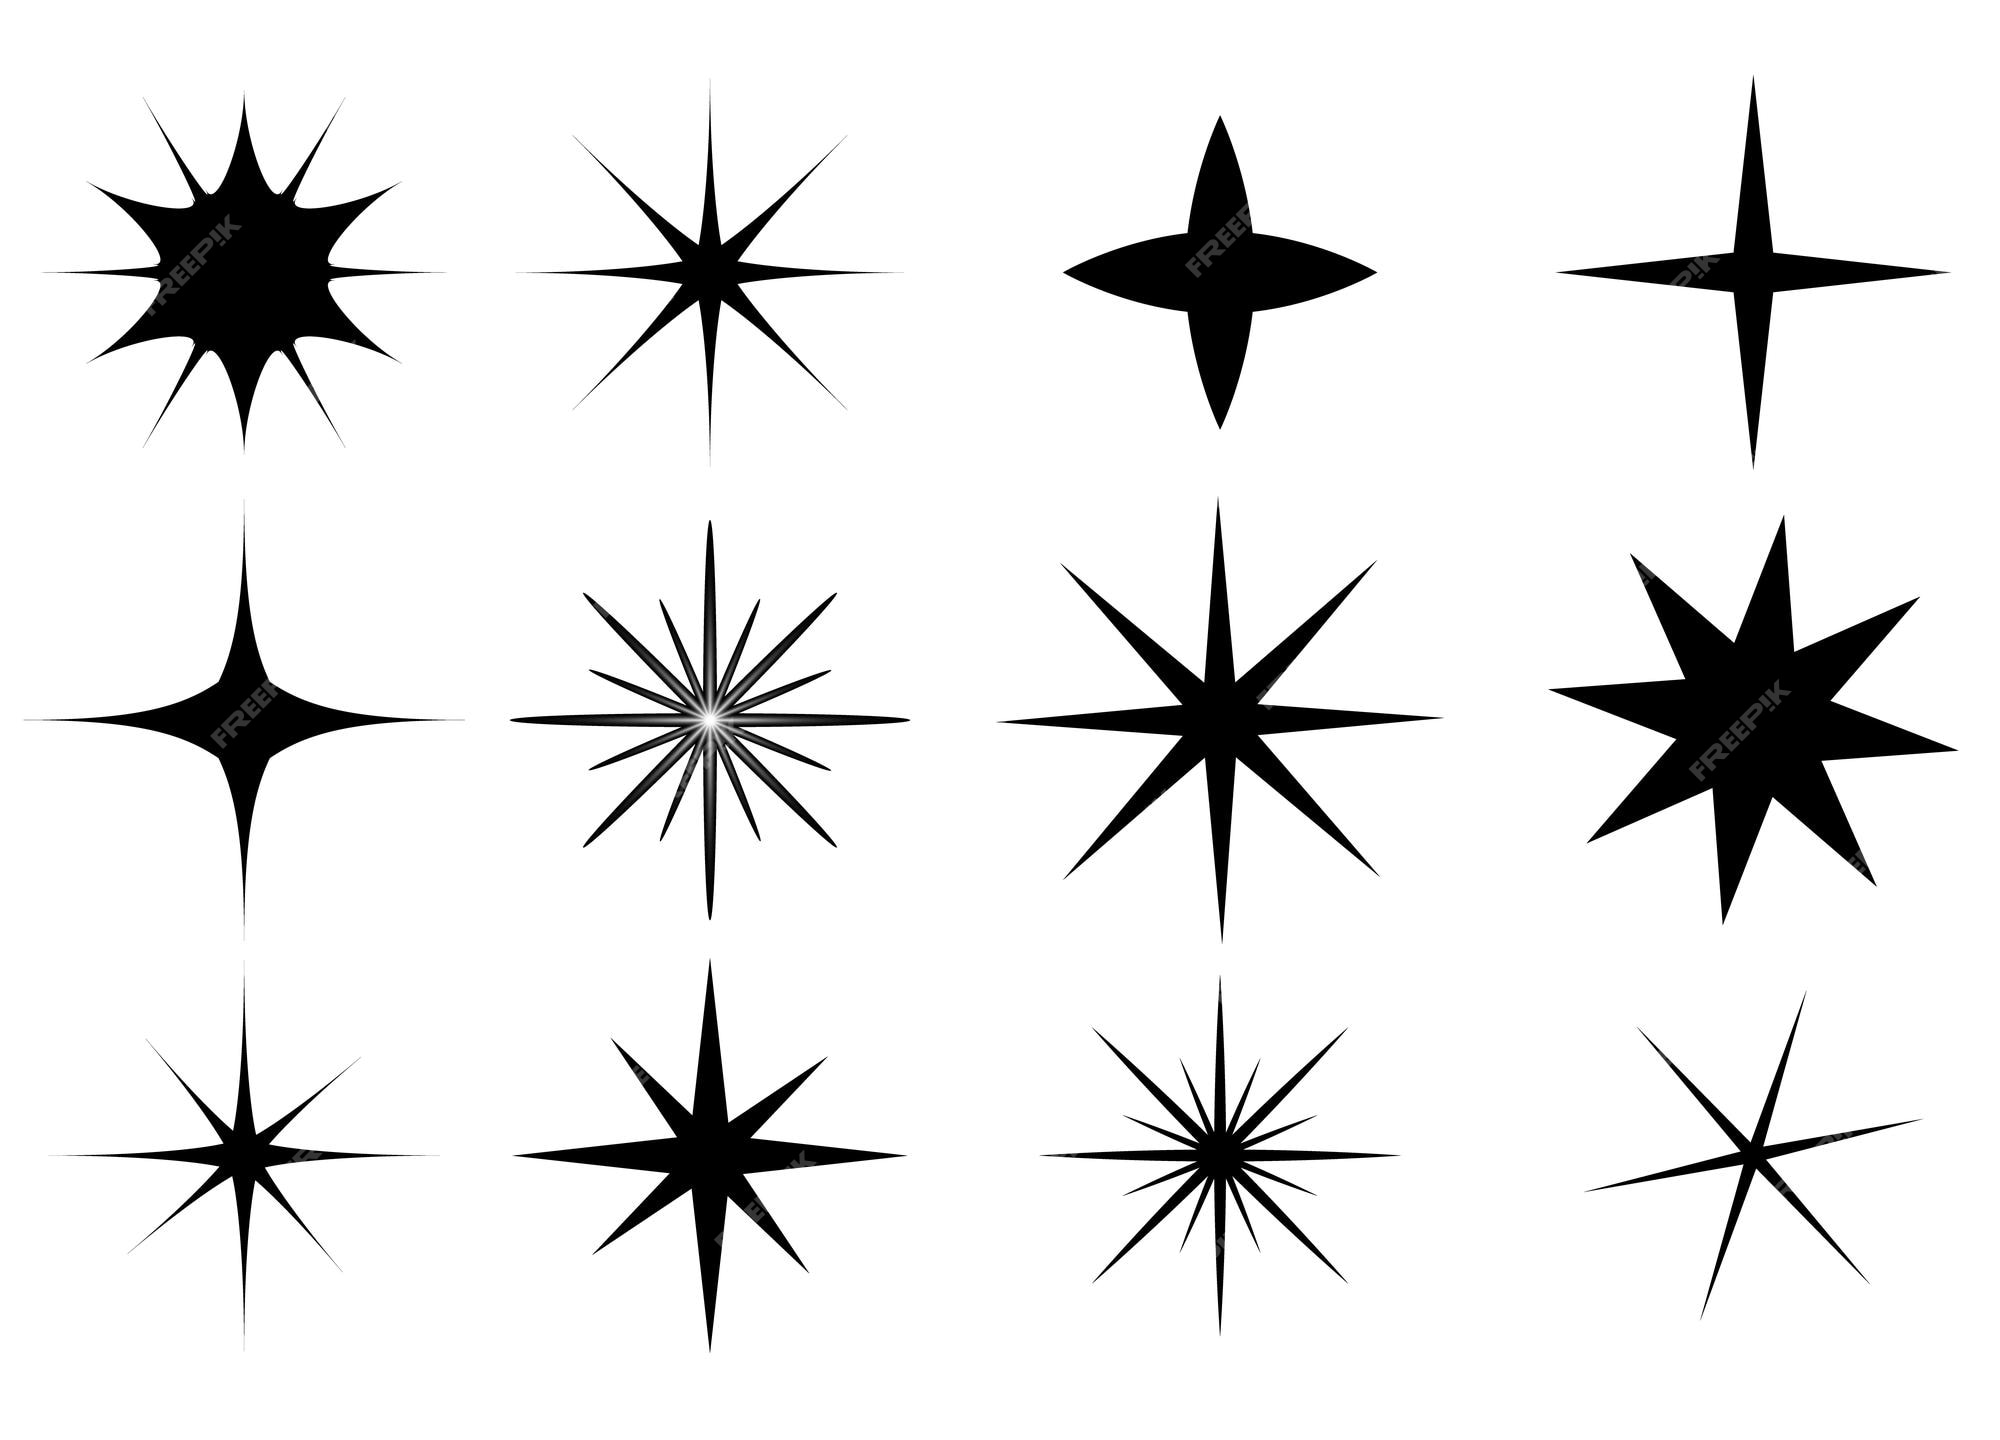 Biểu tượng ngôi sao có thể là tâm điểm của bất kỳ thiết kế nào. Và bộ sưu tập biểu tượng ngôi sao của chúng tôi sẽ giúp bạn tạo ra những trải nghiệm thú vị và độc đáo cho người dùng của mình. Hãy thử nghiên cứu thêm về chúng ngay hôm nay!